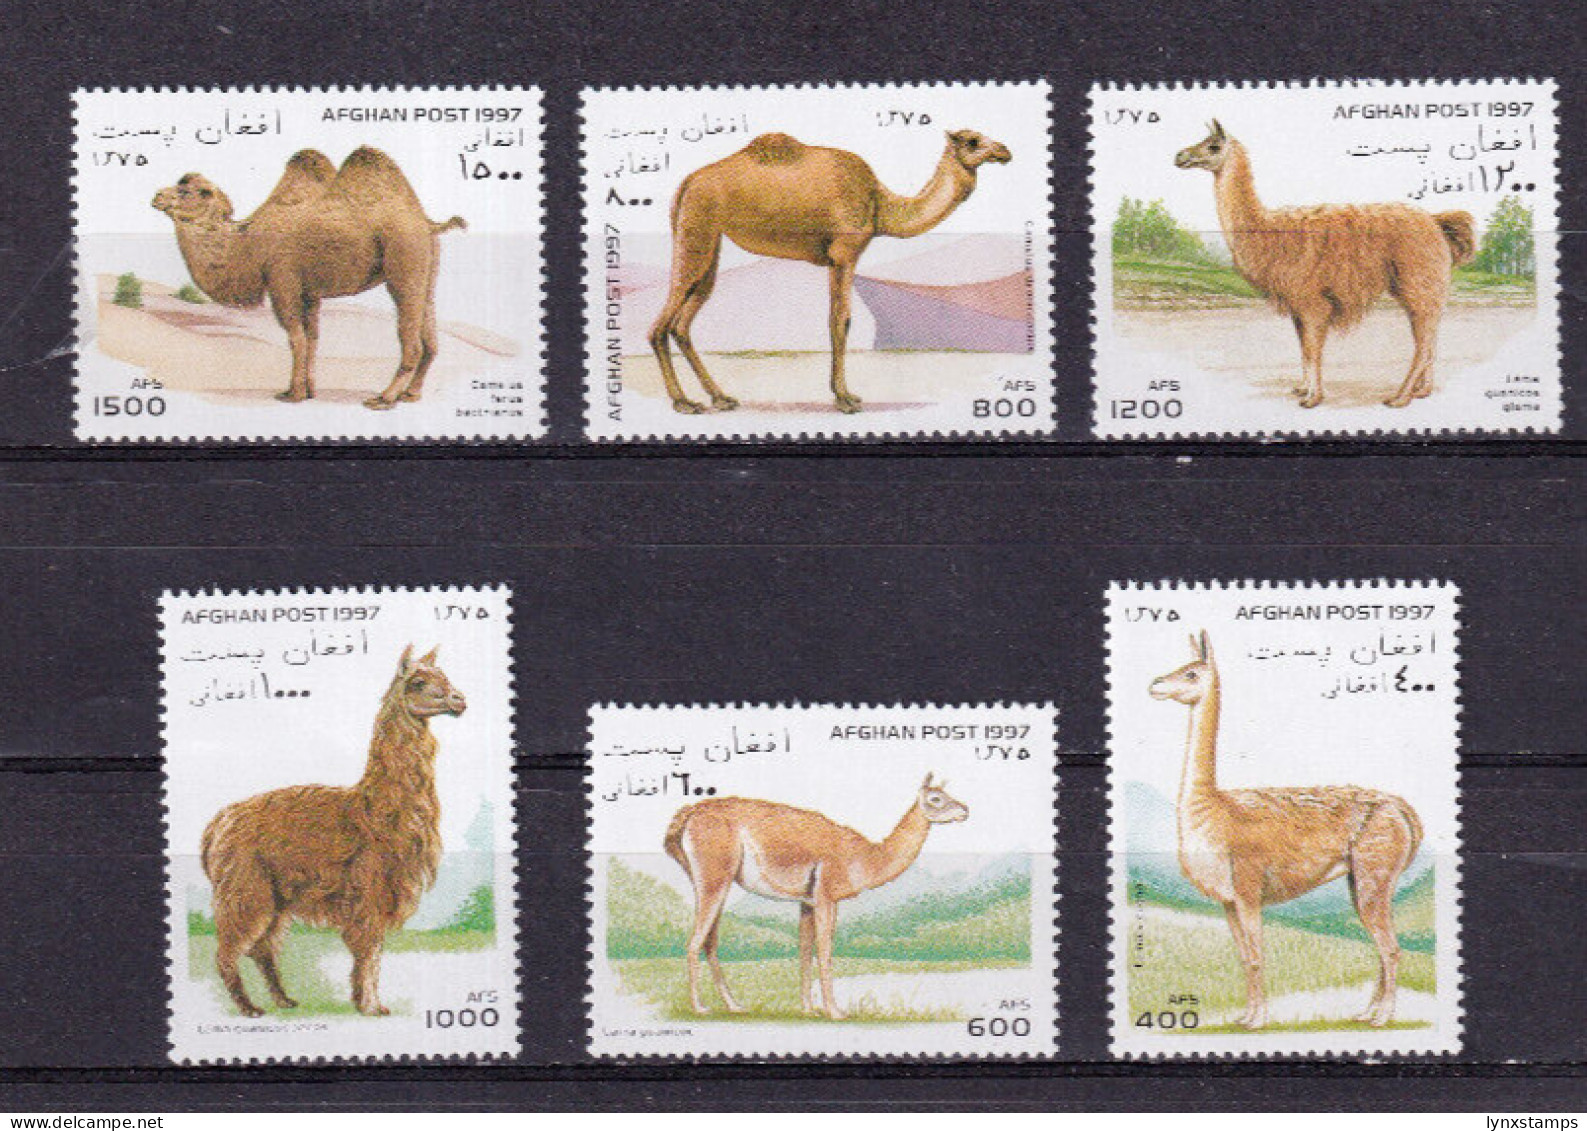 LI04 Afghanistan 1997 Llamas & Camels Mint Stamps - Afghanistan